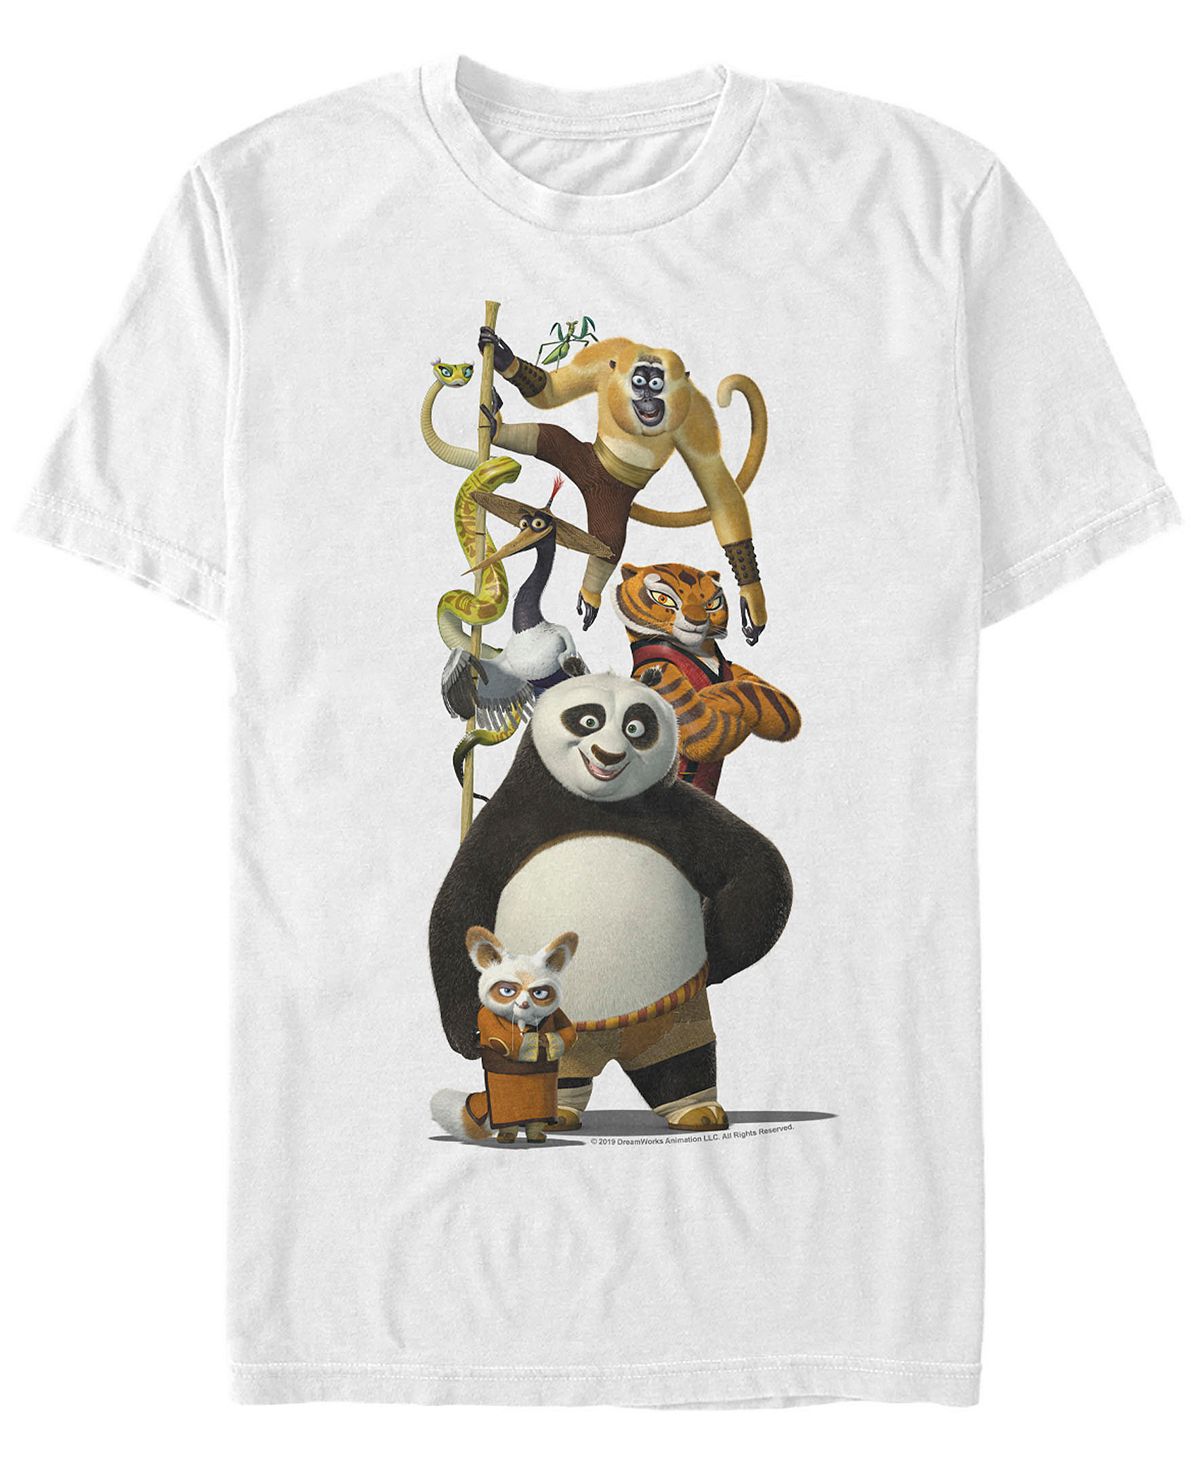 Мужская футболка с короткими рукавами по и друзья кунг-фу панда Fifth Sun, белый кунг фу панда книжка с цветными мелками